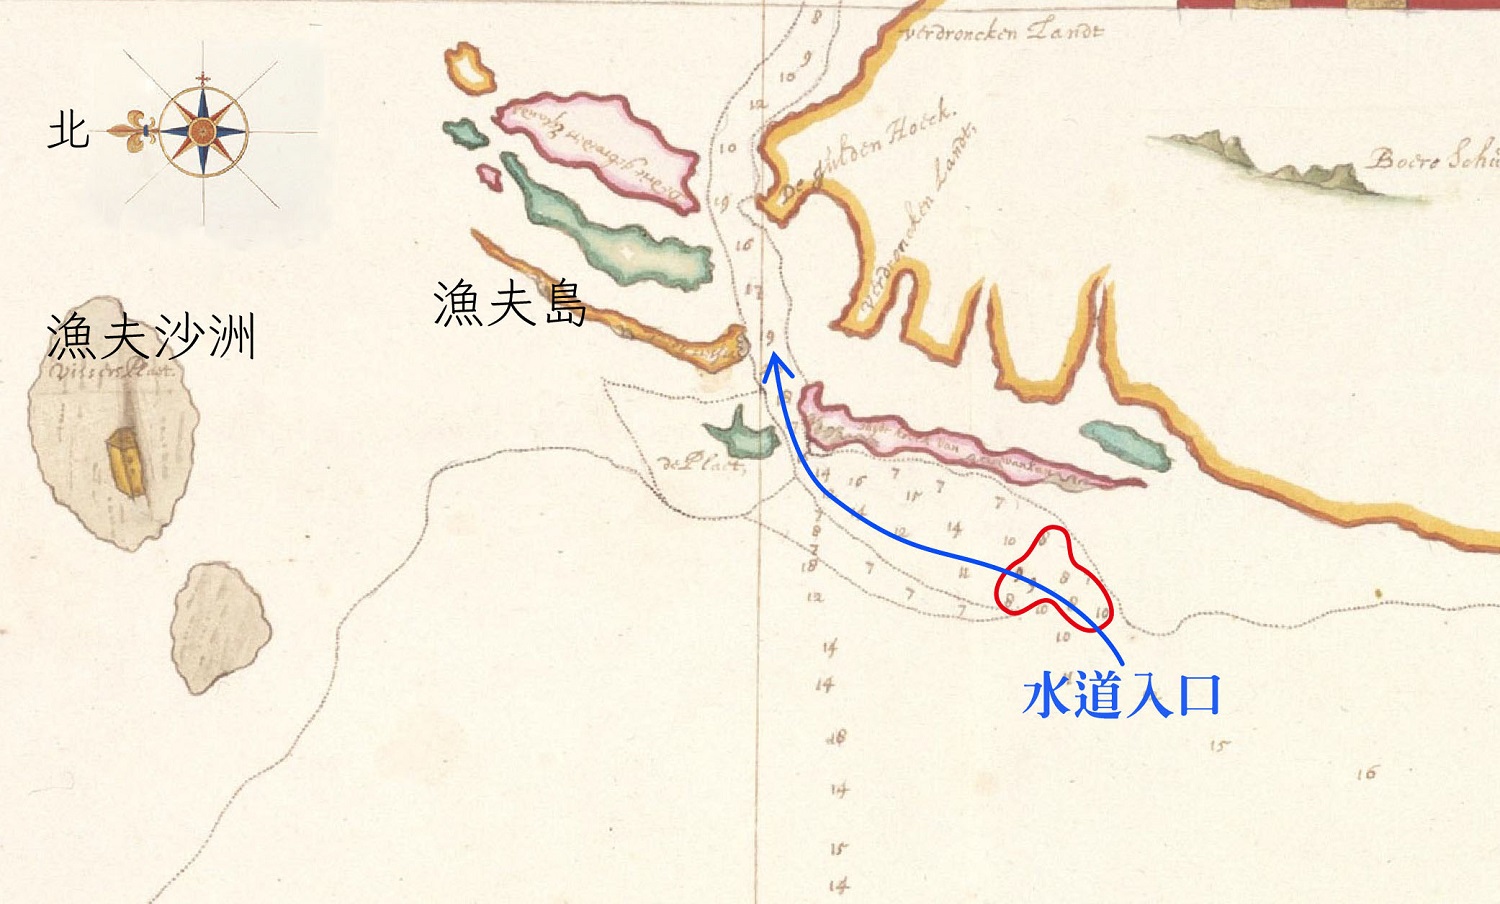 1633 年之前測繪的魍港海圖。藍線標示是可以航行的水道，此時水道入口處深度只有 7-8 呎（紅圈處），大型中式帆船不易出入，要小心翼翼地投測深錘前進圖│研之有物(資料來源│River Matthaw (Pachang, northerly Taoyuan（部分）, Johannes Vingboons, Atlas Blaeu, vol. 41:06, fol. 48-49.) 感謝奧地利國家圖書館（Österreichische Nationalbibliothek）授權使用。)